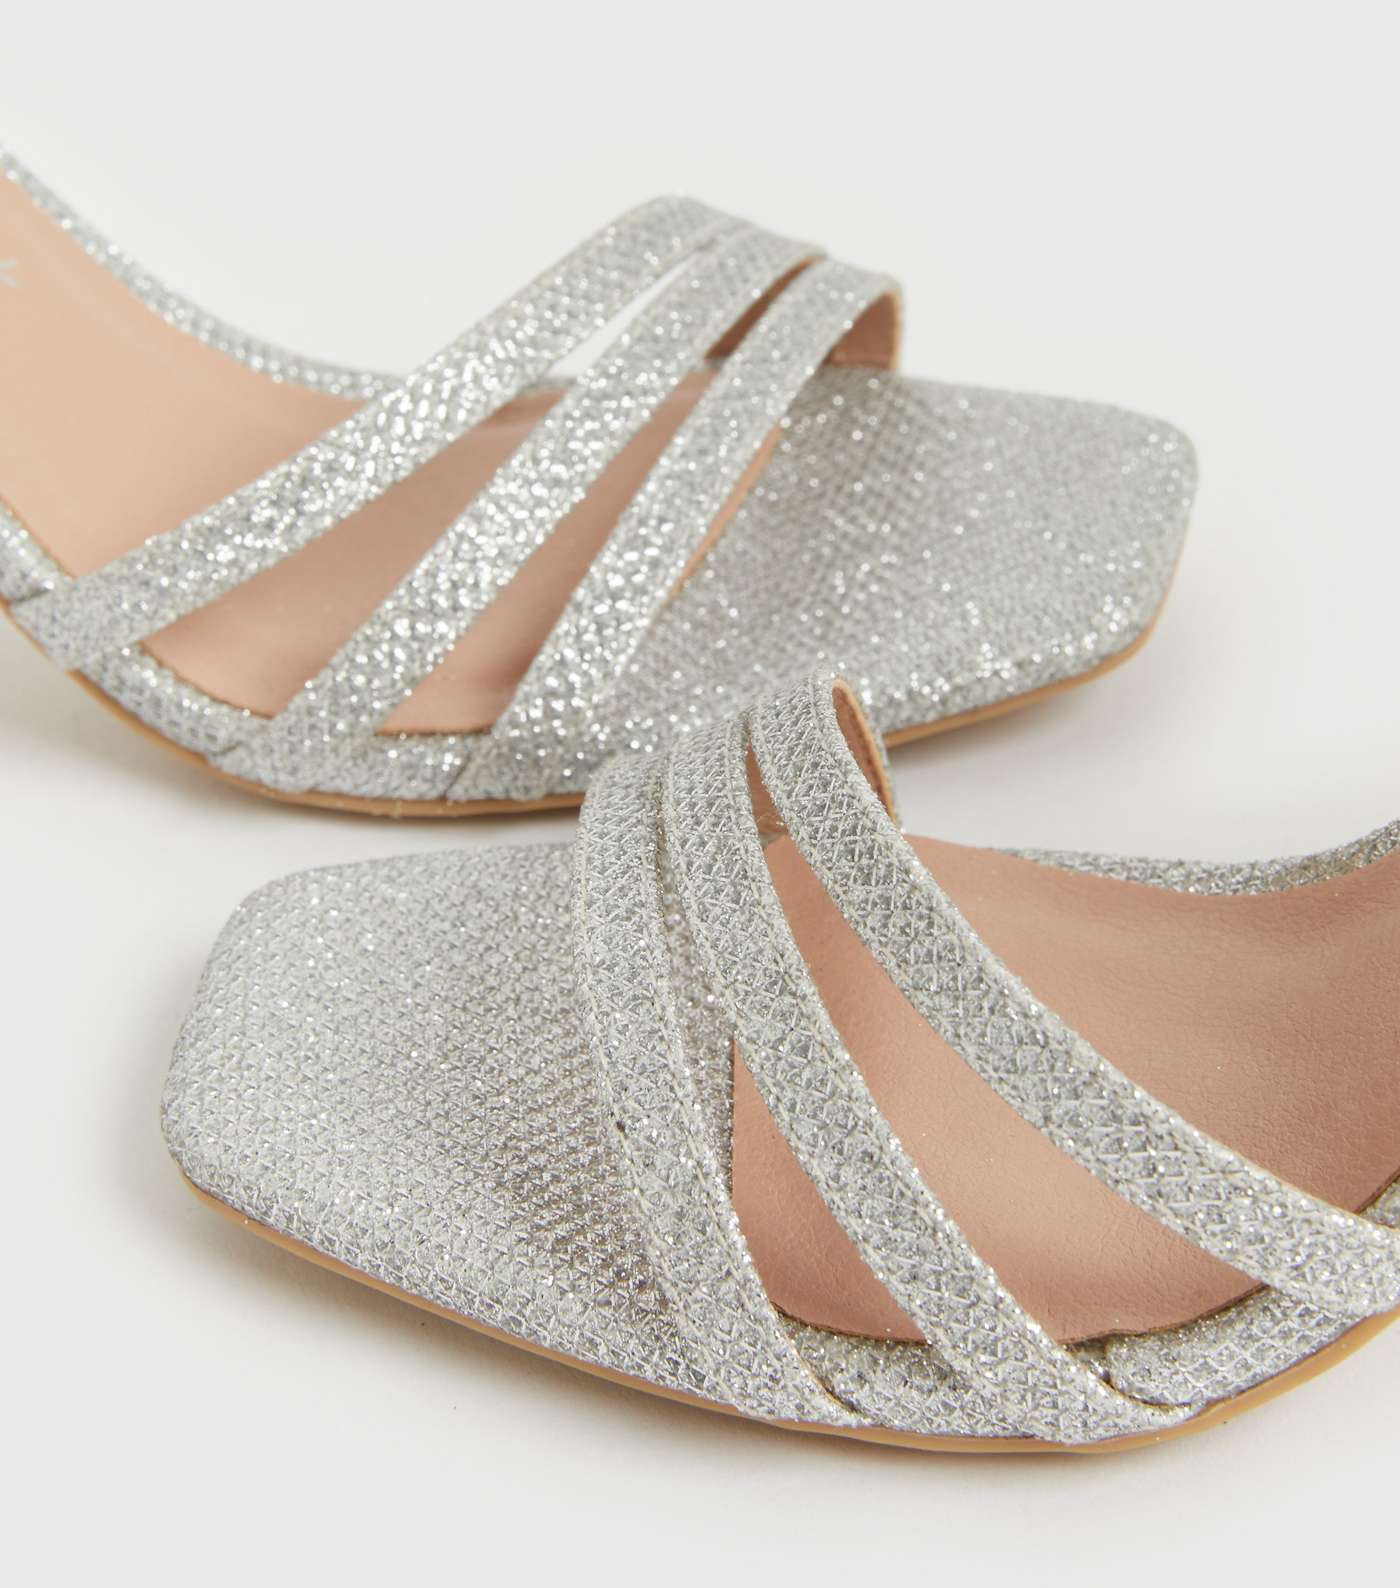 Silver Glitter Asymmetric Strappy Stiletto Heel Sandals Image 4